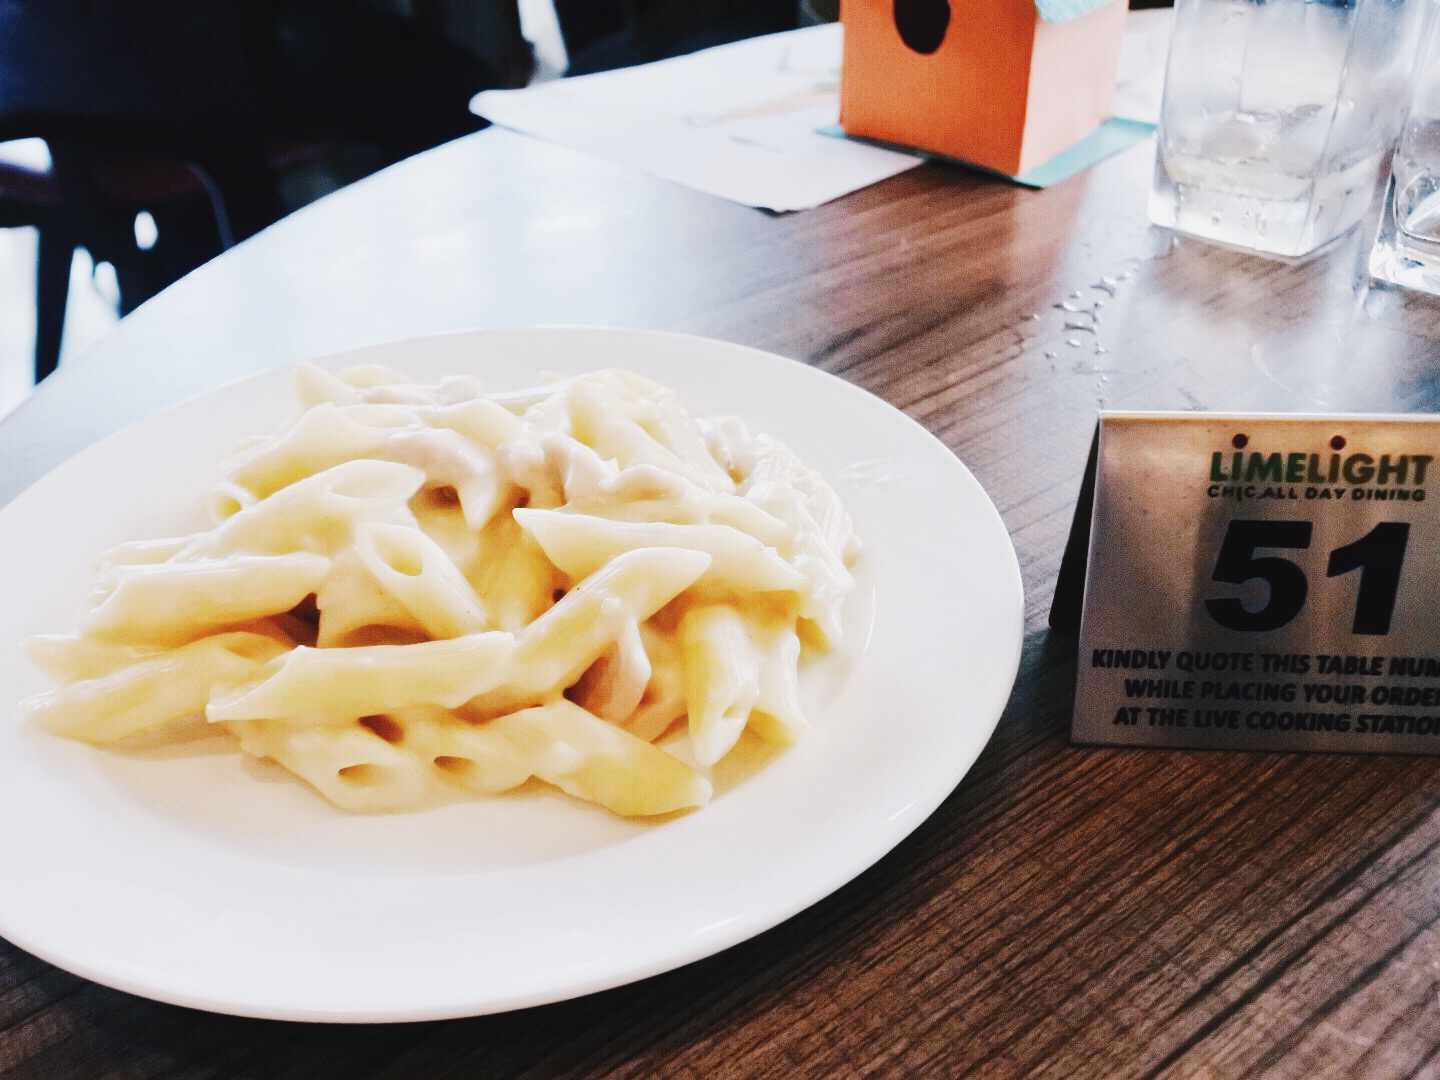 Cheesy pasta